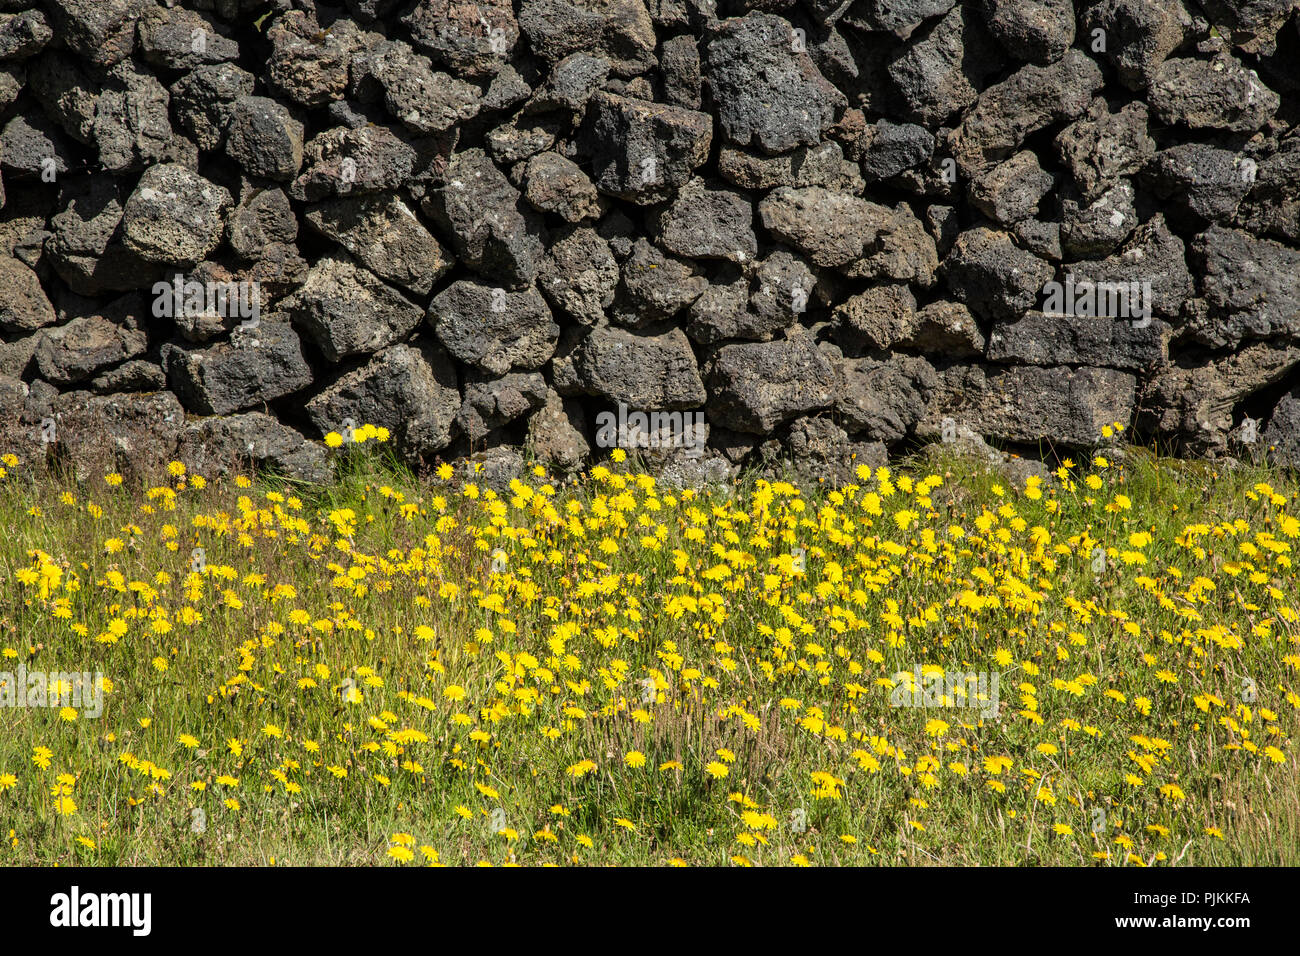 Island, Steinmauer von Lavasteinen, gelbe Blume Wiese Stockfoto